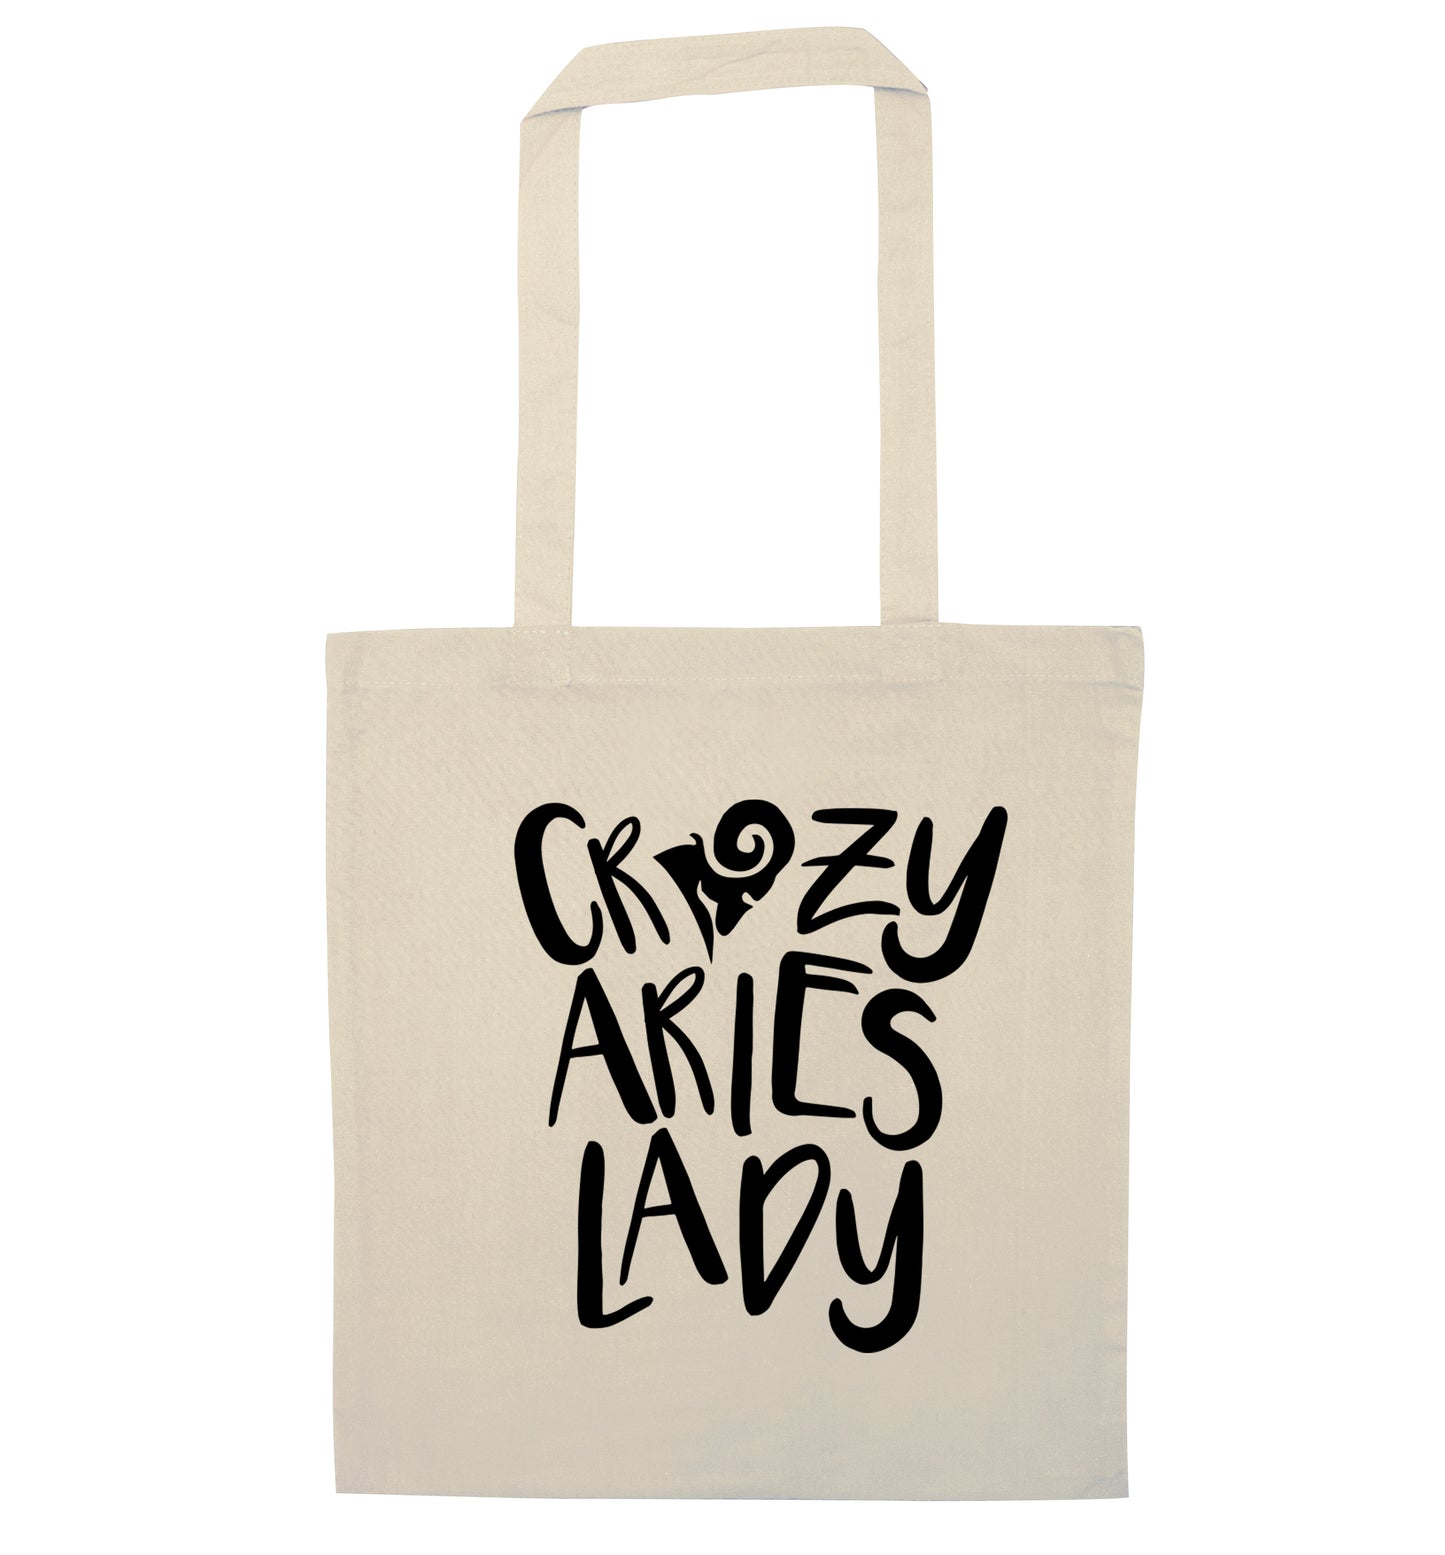 Crazy aries lady natural tote bag